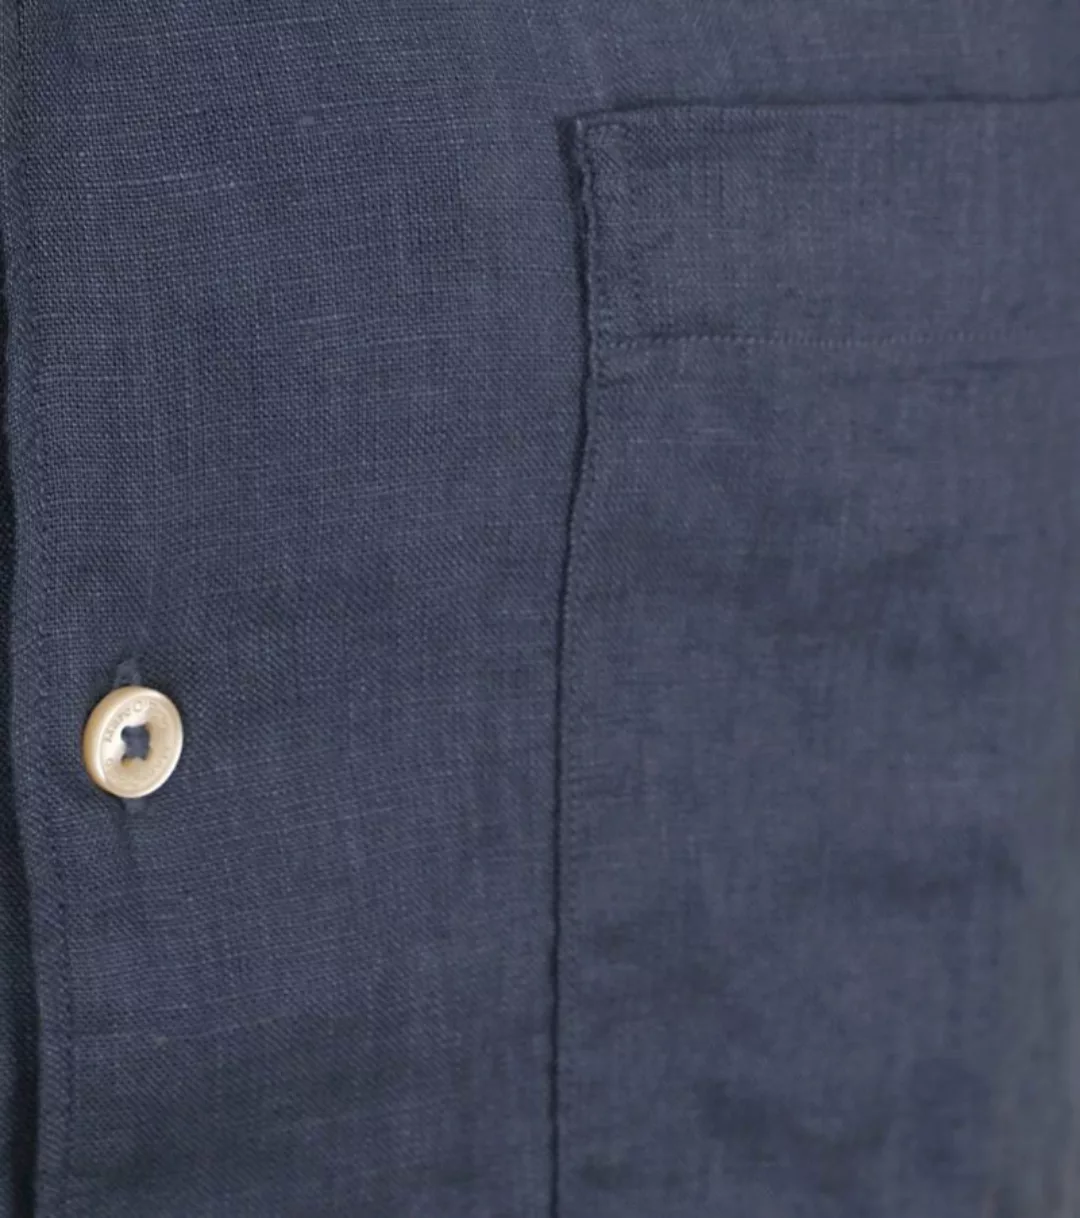 Marc O'Polo Hemd Short Sleeves Leinen Navy - Größe M günstig online kaufen